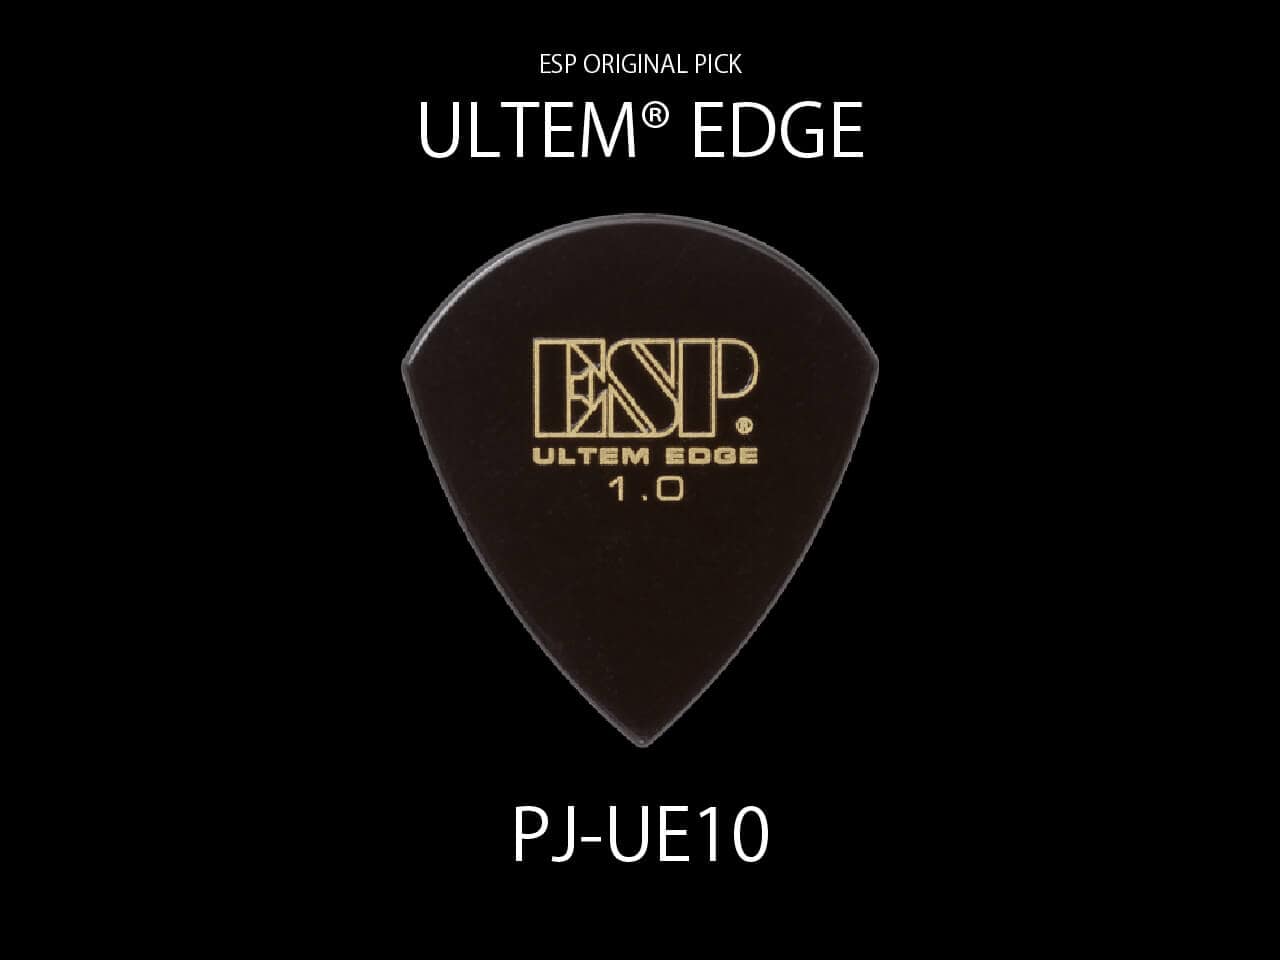 ESP(イーエスピー) Original Pick Series PJ-UE10 / ULTEM® EDGE